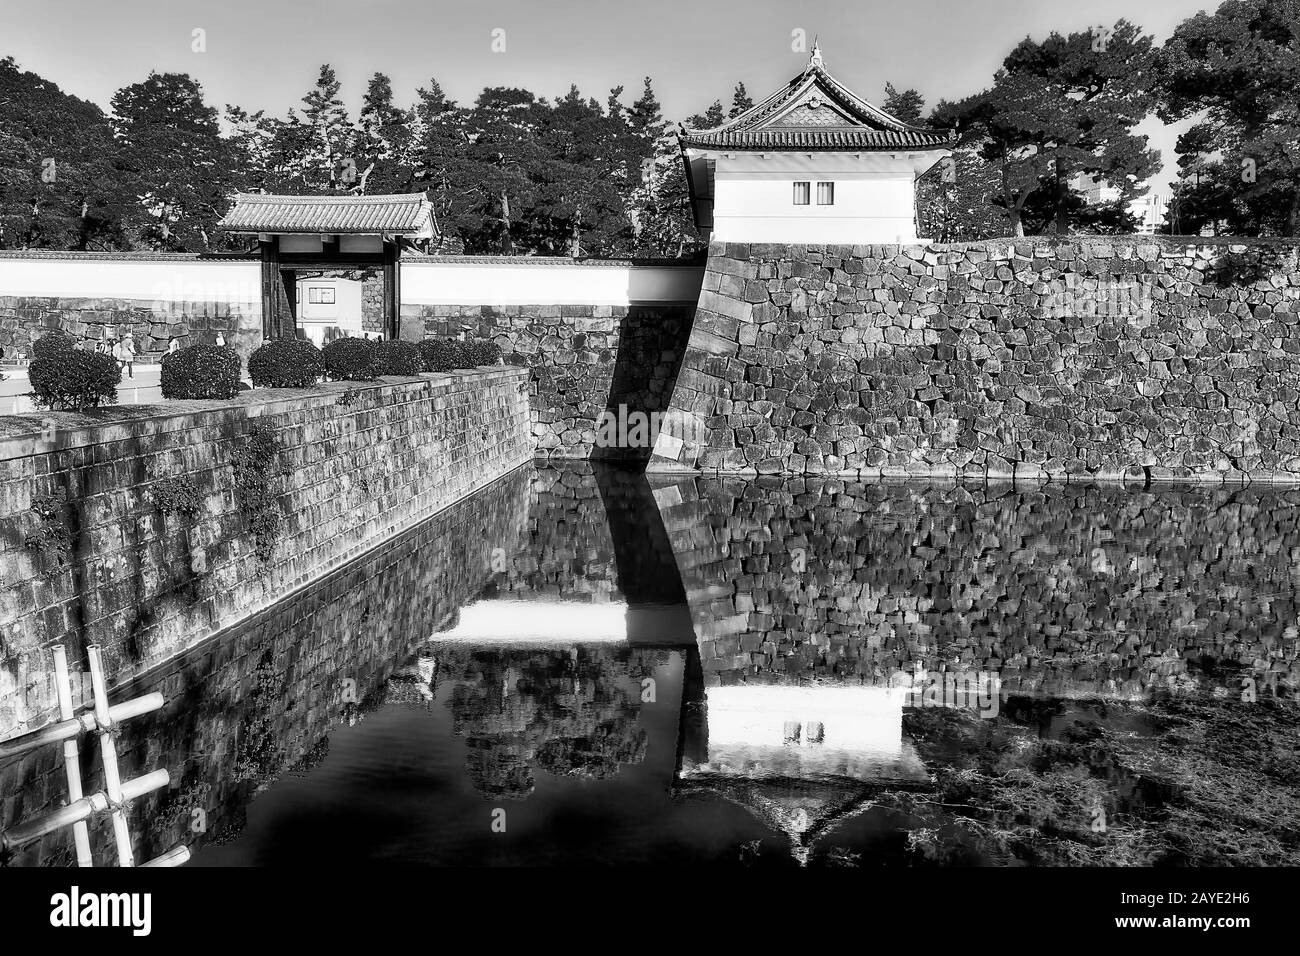 Image blanche noire à contraste élevé de murs en pierre puissants et d'une large zone aquatique autour du château et du parc Imperial edo dans la ville japonaise de Tokyo. Banque D'Images